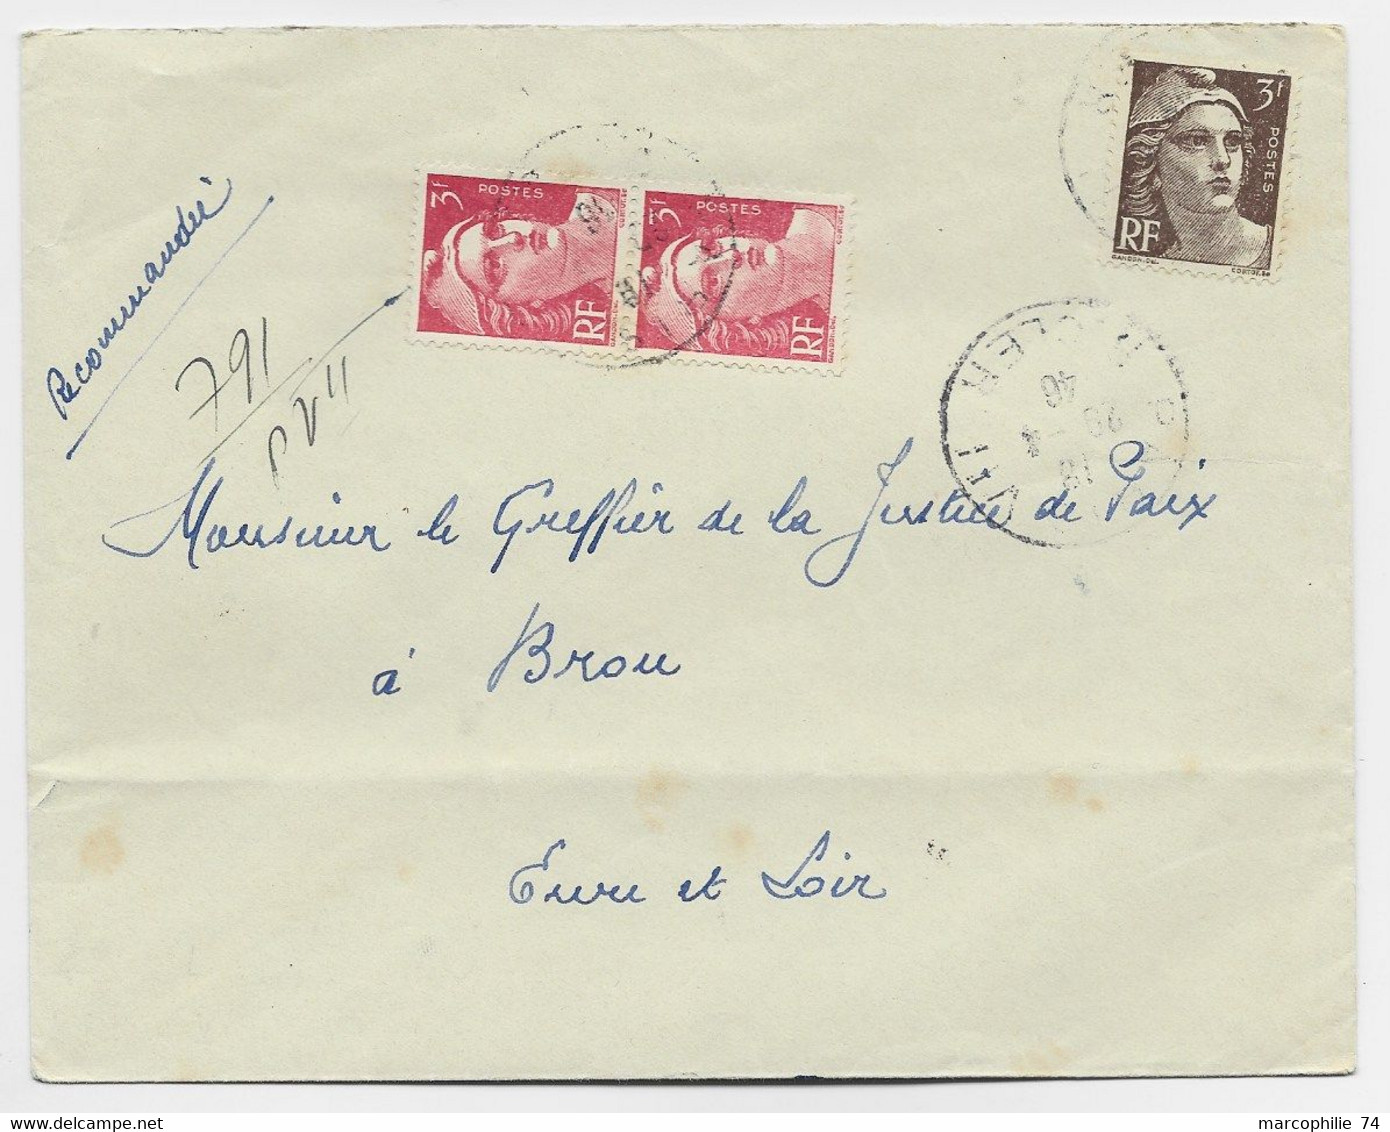 FRANCE GANDON 3FR ROSE PAIRE MIXTE 3FR BRUN LETTRE REC PROVISOIRE PARIS 1946 AU TARIF - 1945-54 Maríanne De Gandon